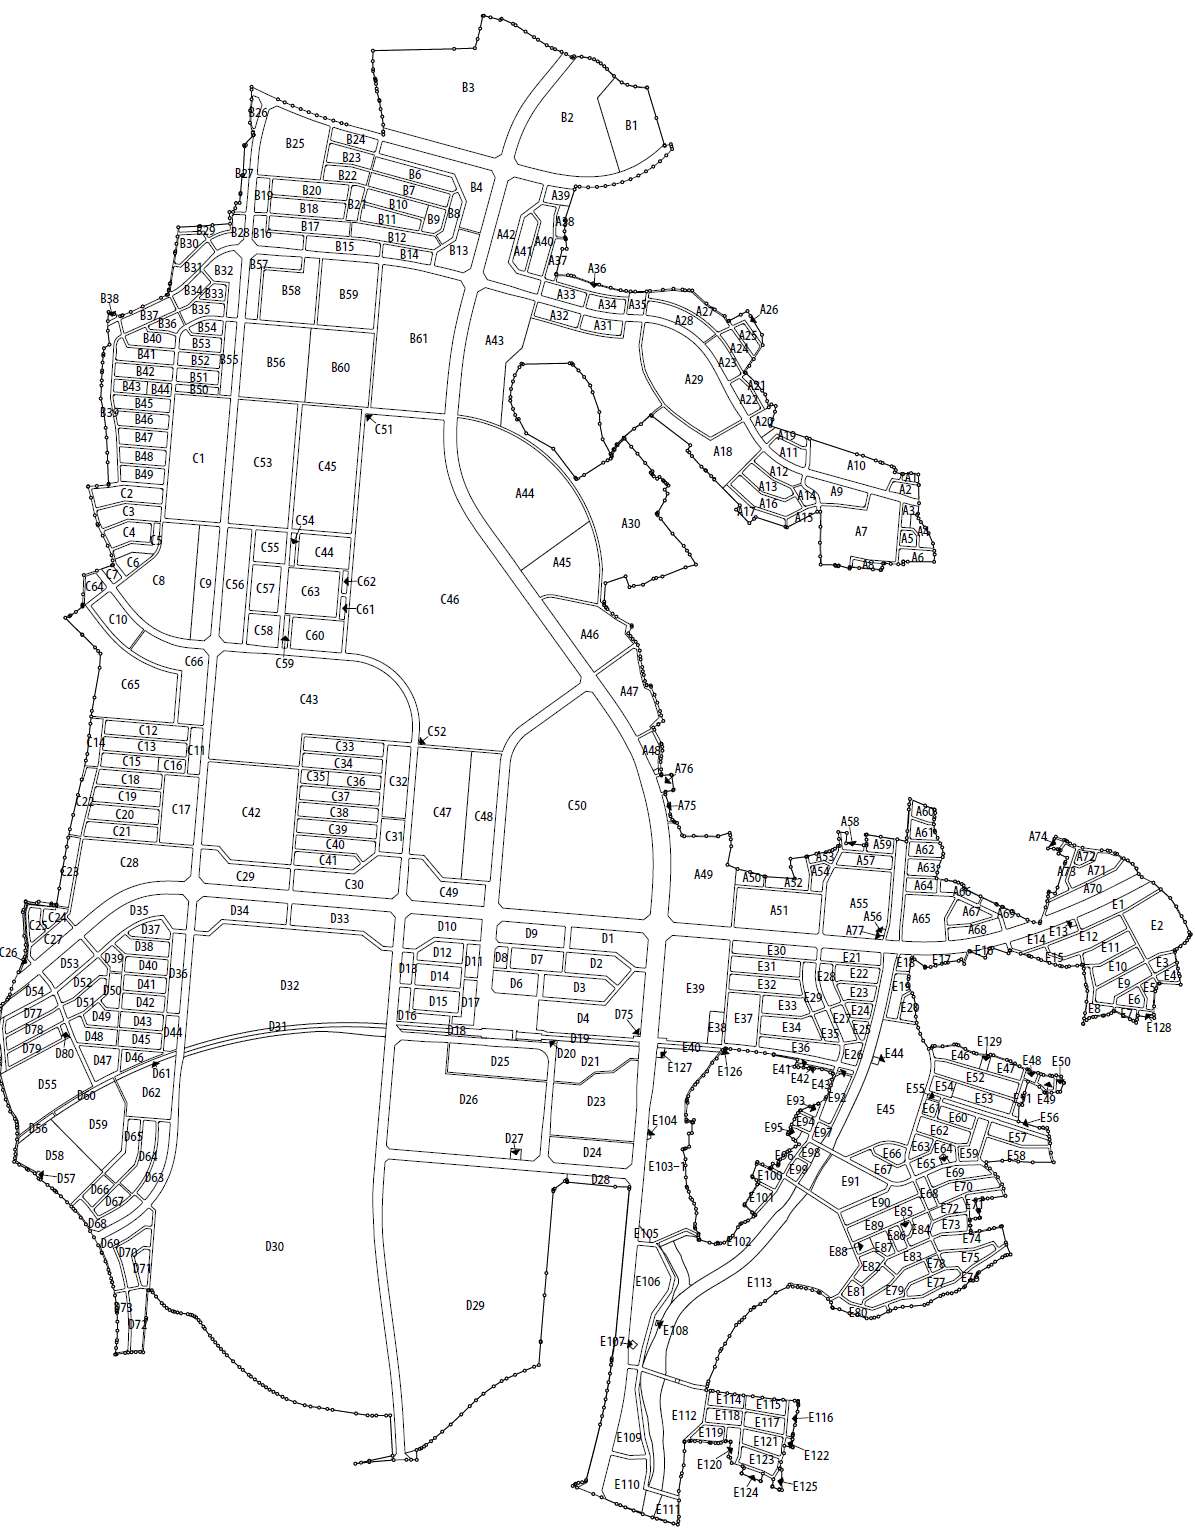 茨城県つくば市の区画整理事業による住所変更 14年6月実施 住所データ 郵便番号データの日本基盤データベース